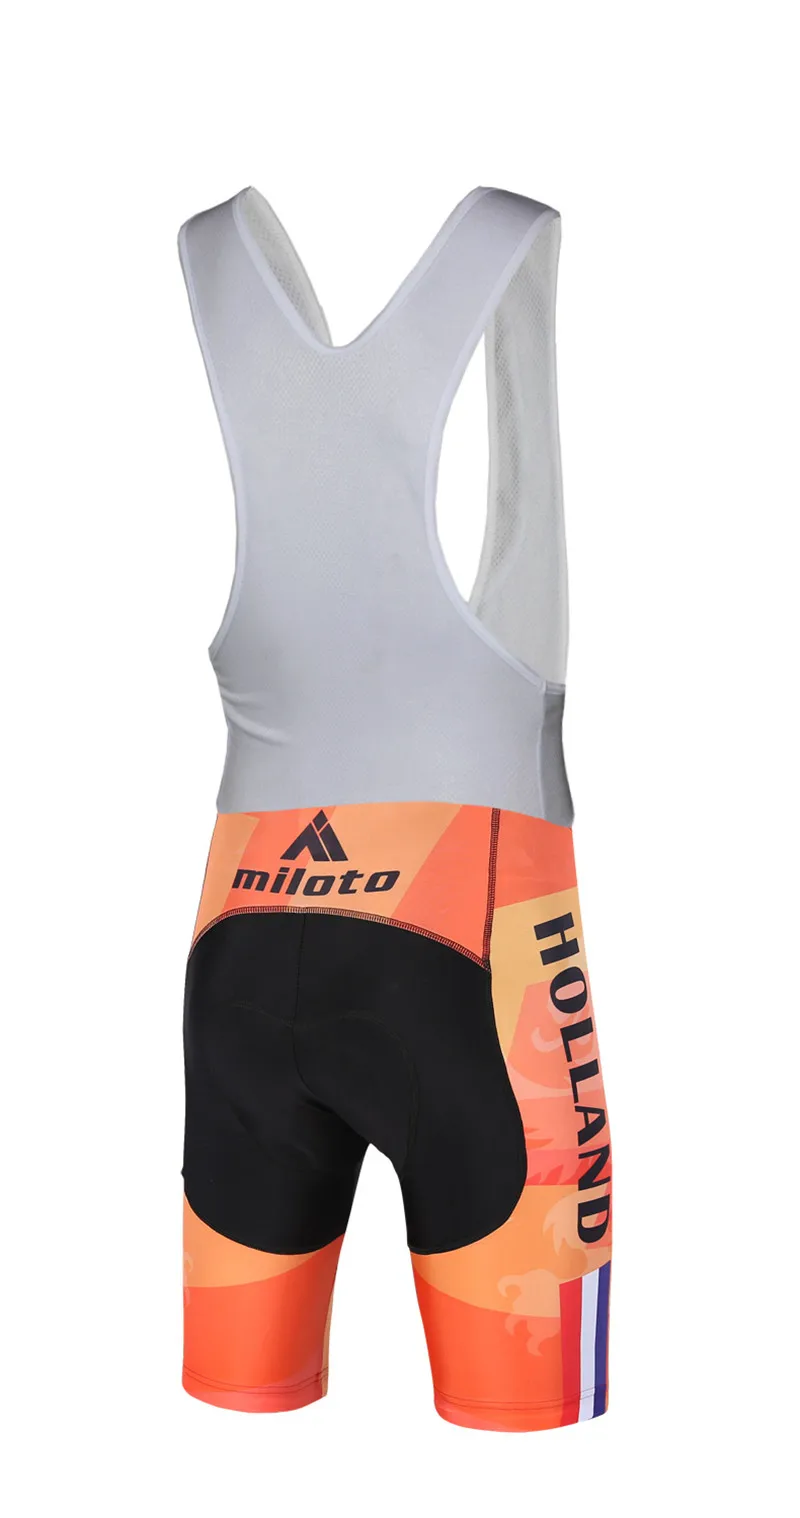 Miloto Нидерланды Велоспорт Джерси комплекты Джерси Ropa Ciclismo Майо голландский Велоспорт одежда спорта Велоспорт одежда